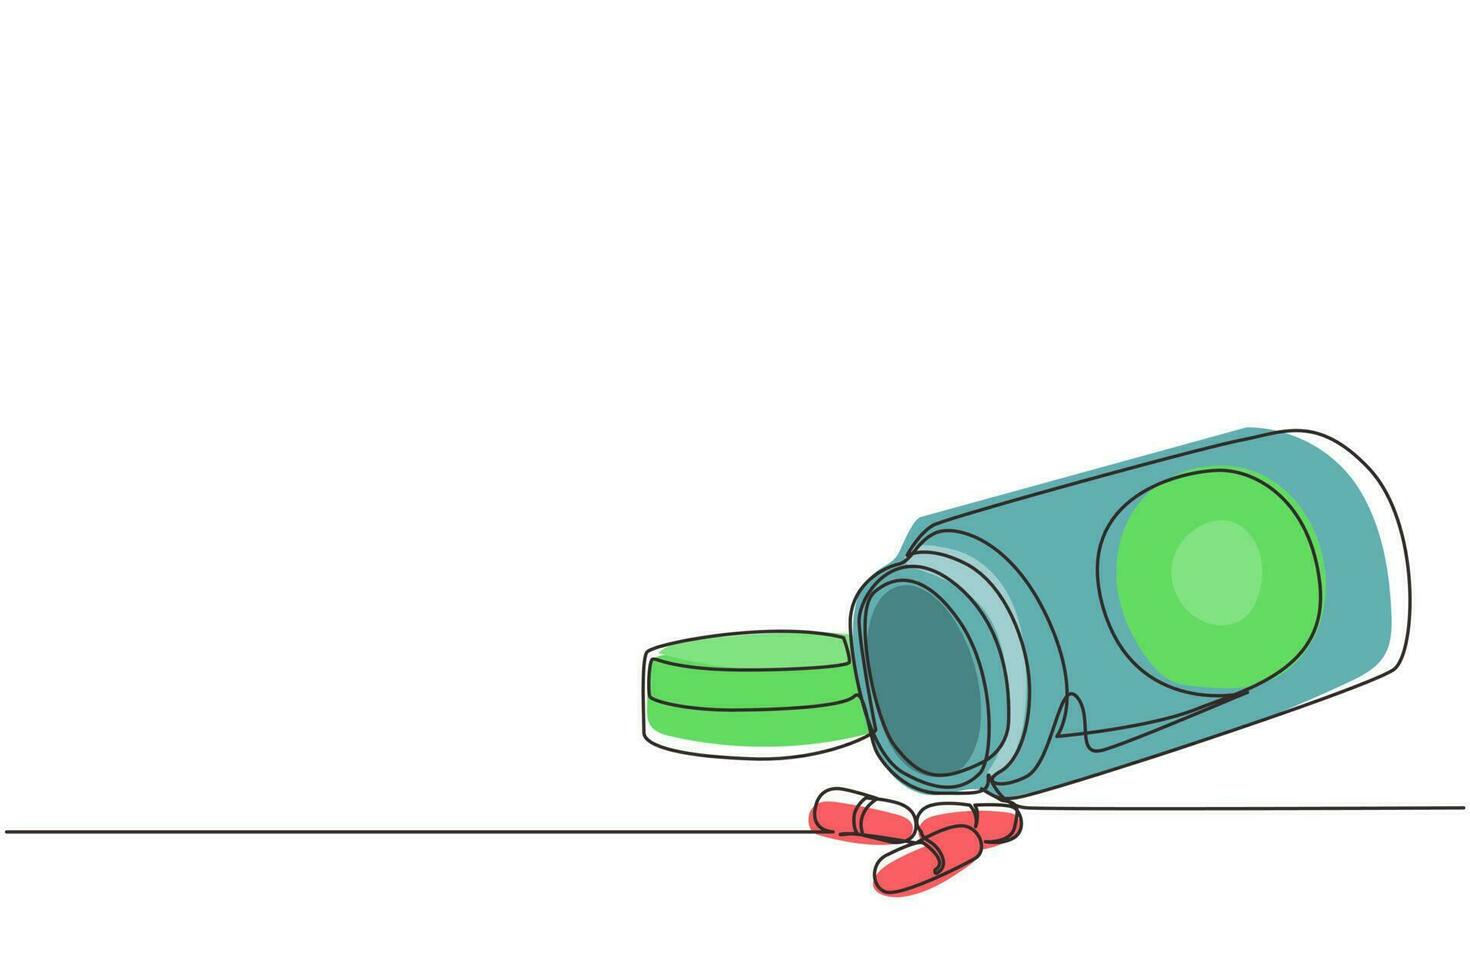 kontinuierliche einzeilige zeichnung einer plastikflasche mit pillen in isometrischer ansicht. Tablettenpillen, Arzneimittel, Apothekenpflege und Tablettenpillen, Antibiotika, Pharmazeutika. einzeiliges zeichnen design vektorillustration vektor